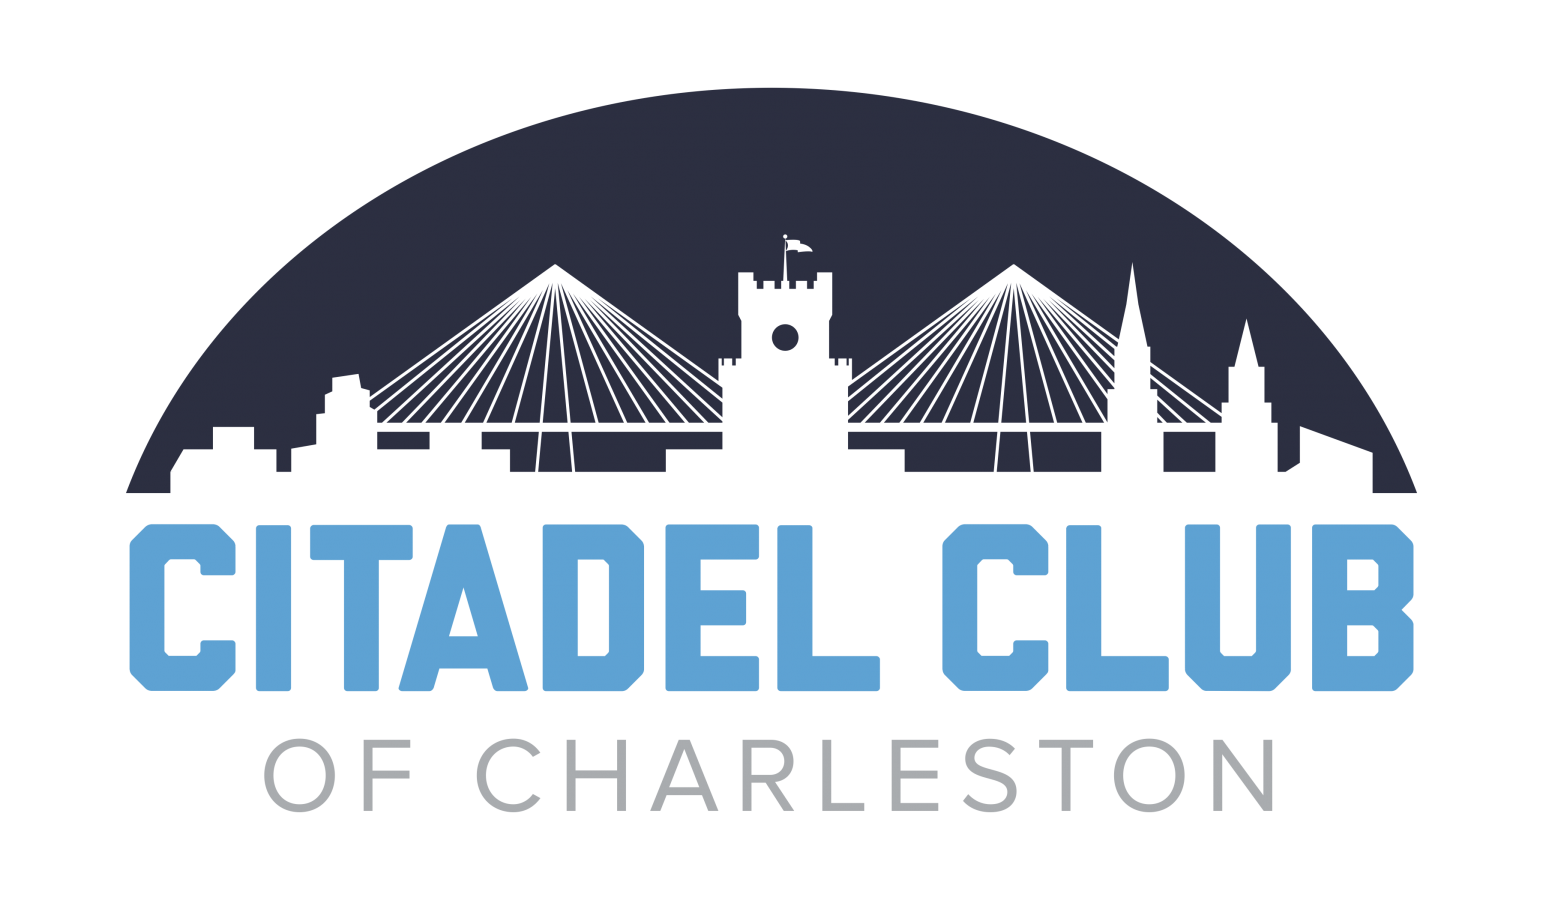 The Citadel Club